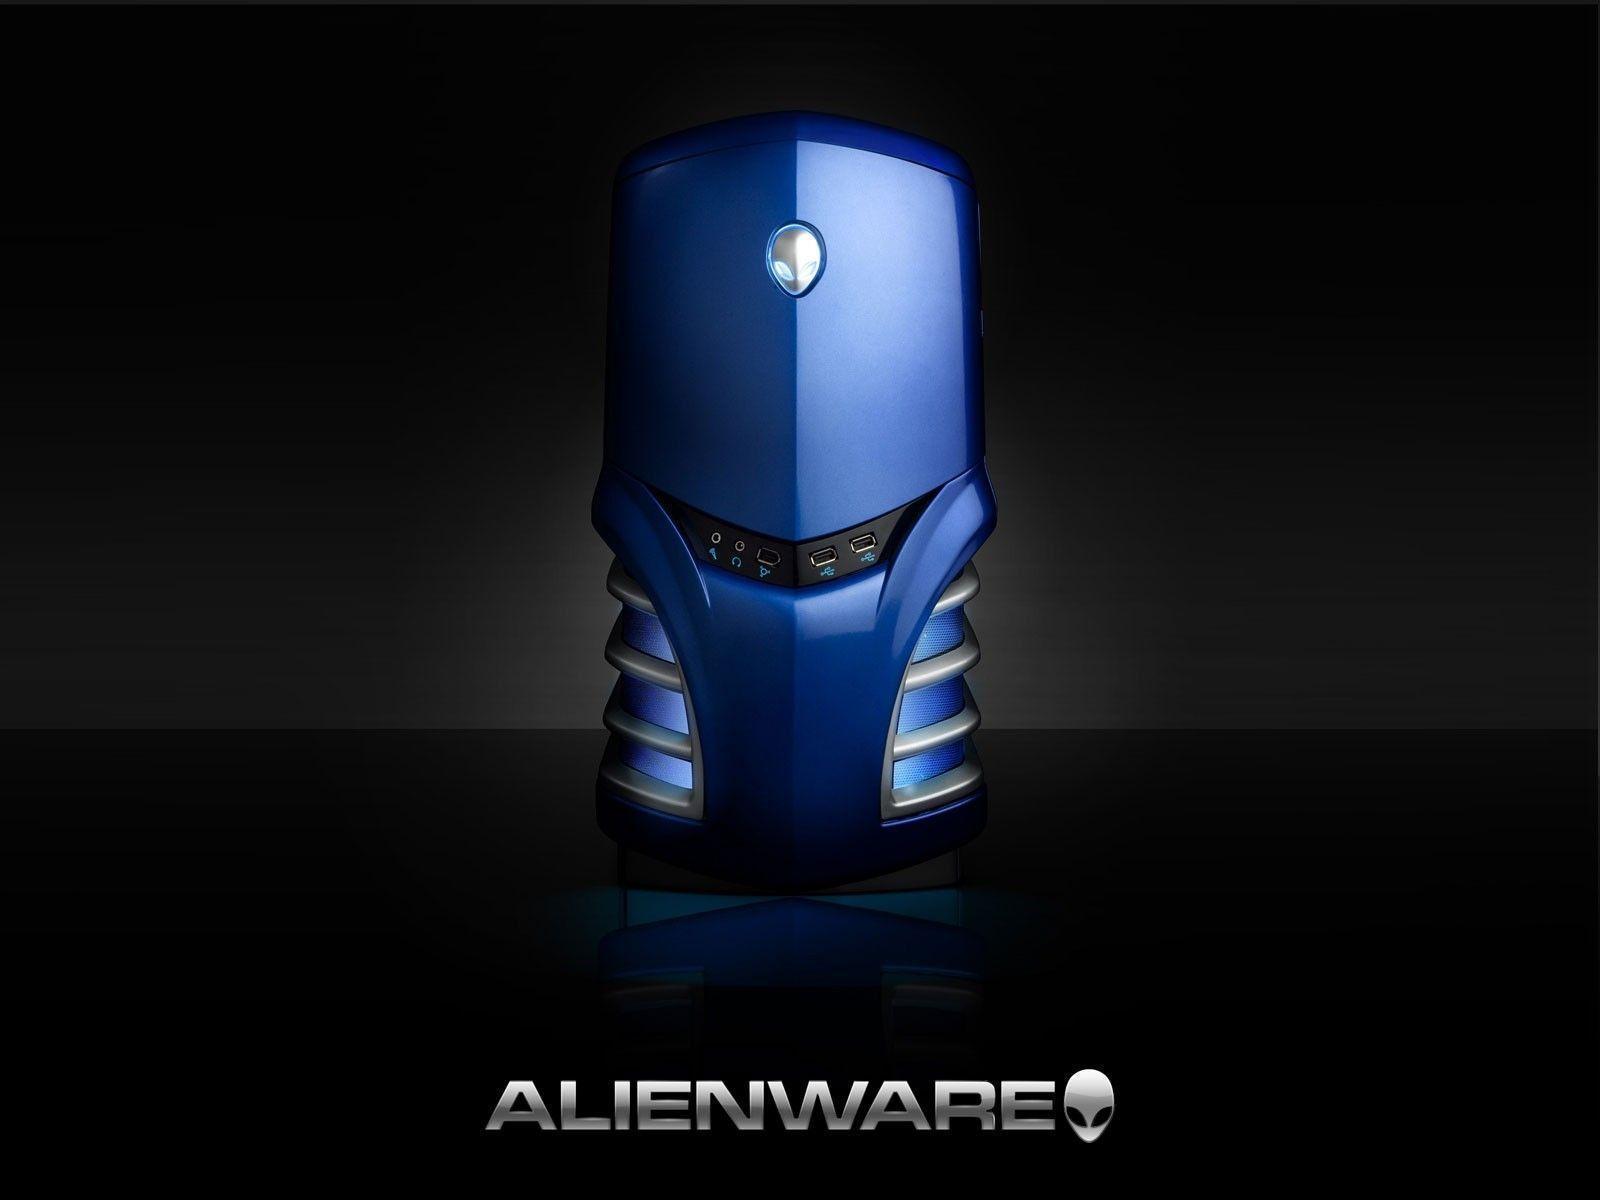 HD Alienware Wallpaper 1920x1080 & Alienware Background